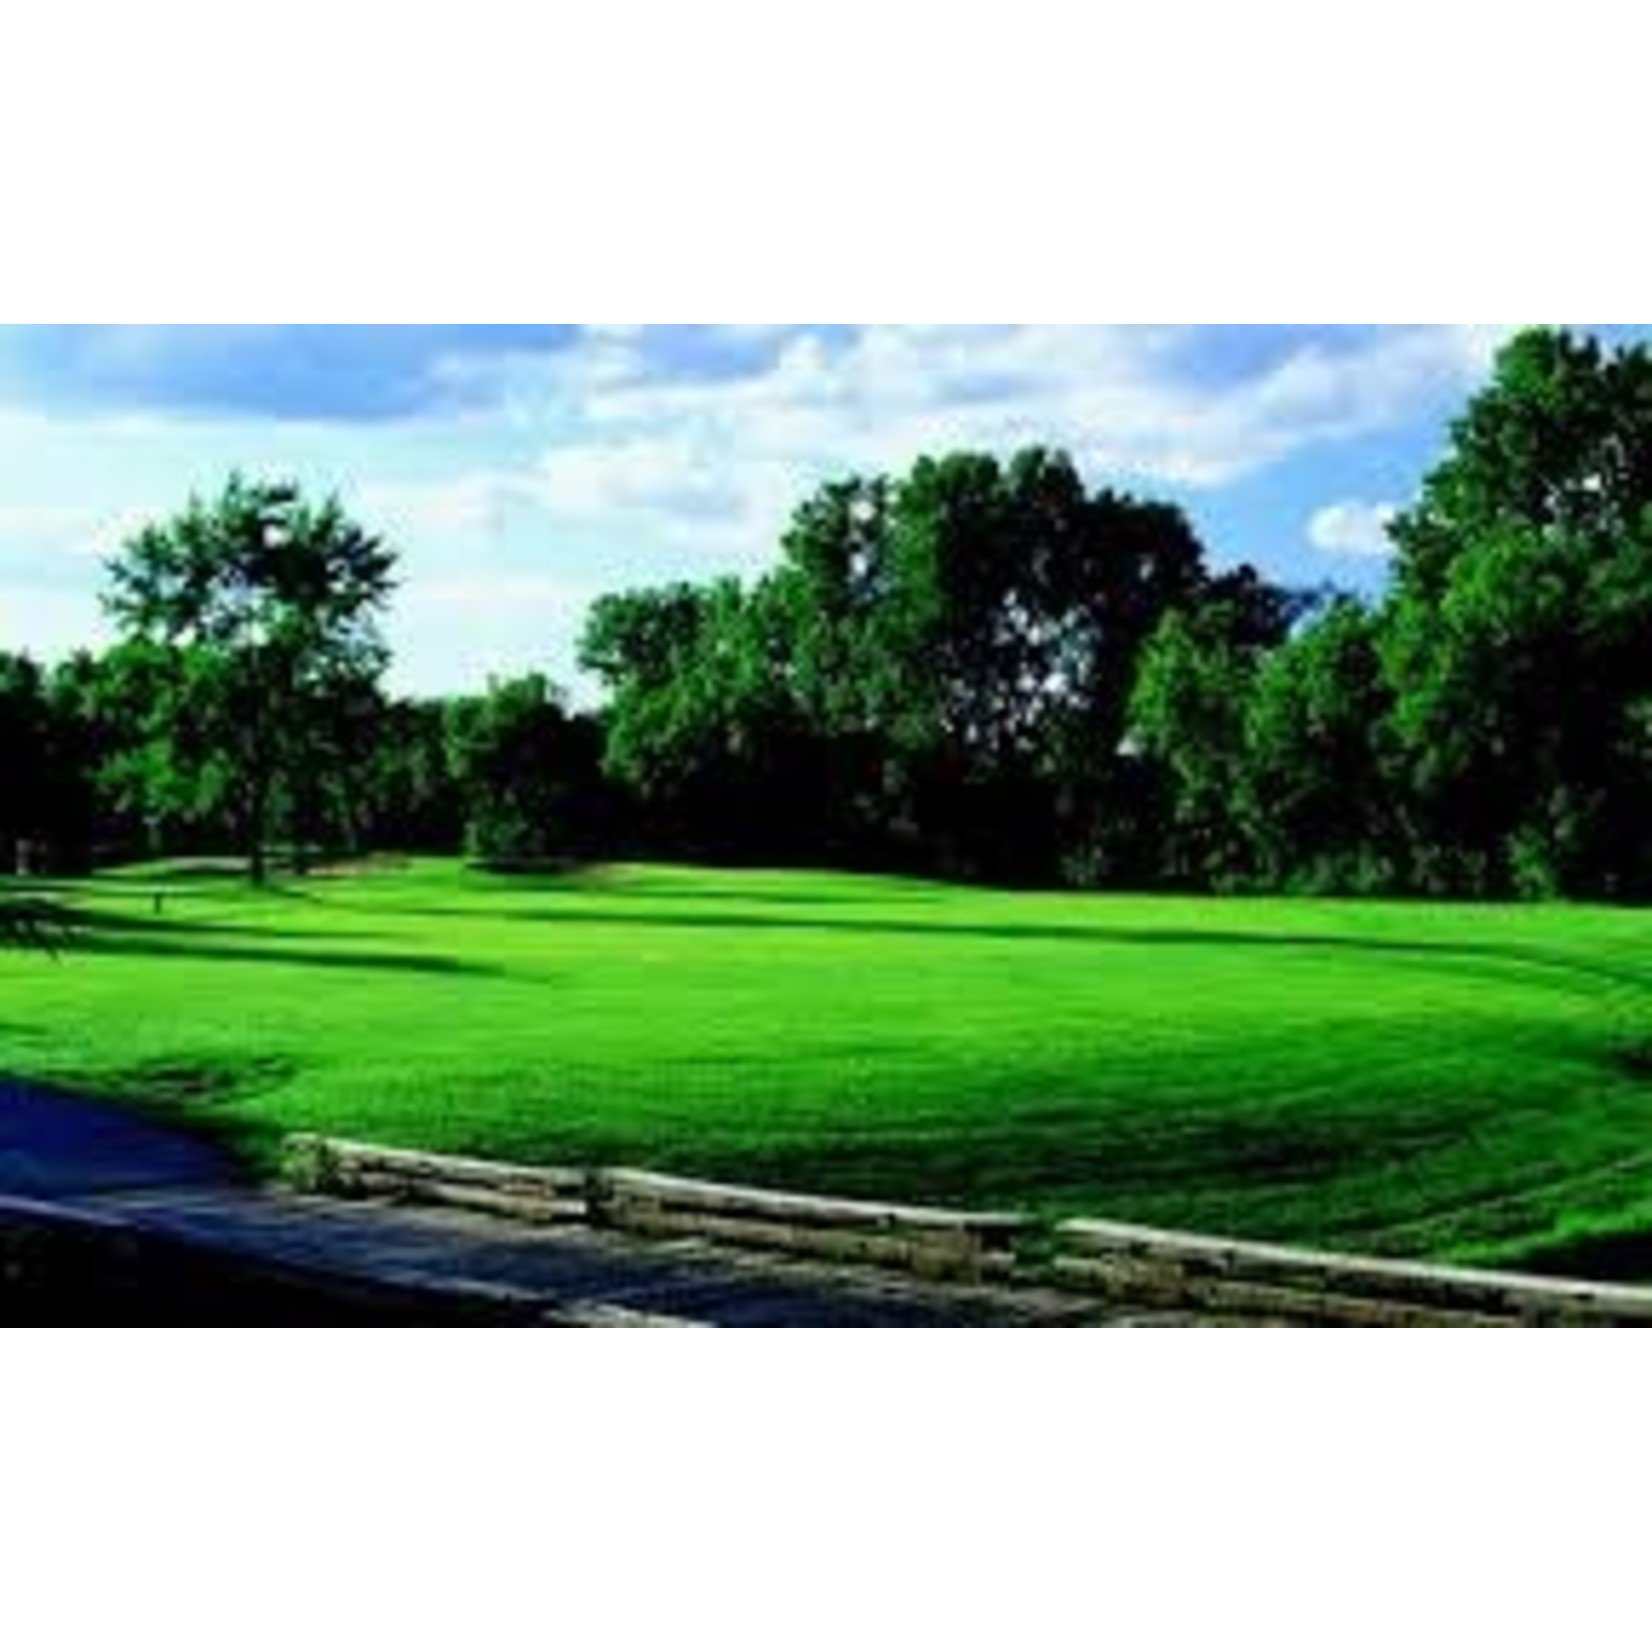 Hilldale Golf Club-Hoffman Estates Hilldale Golf Club-Hoffman Estates $110  Mon-Fri Golf for Two &Cart Ex. 12/31/24(1/30)